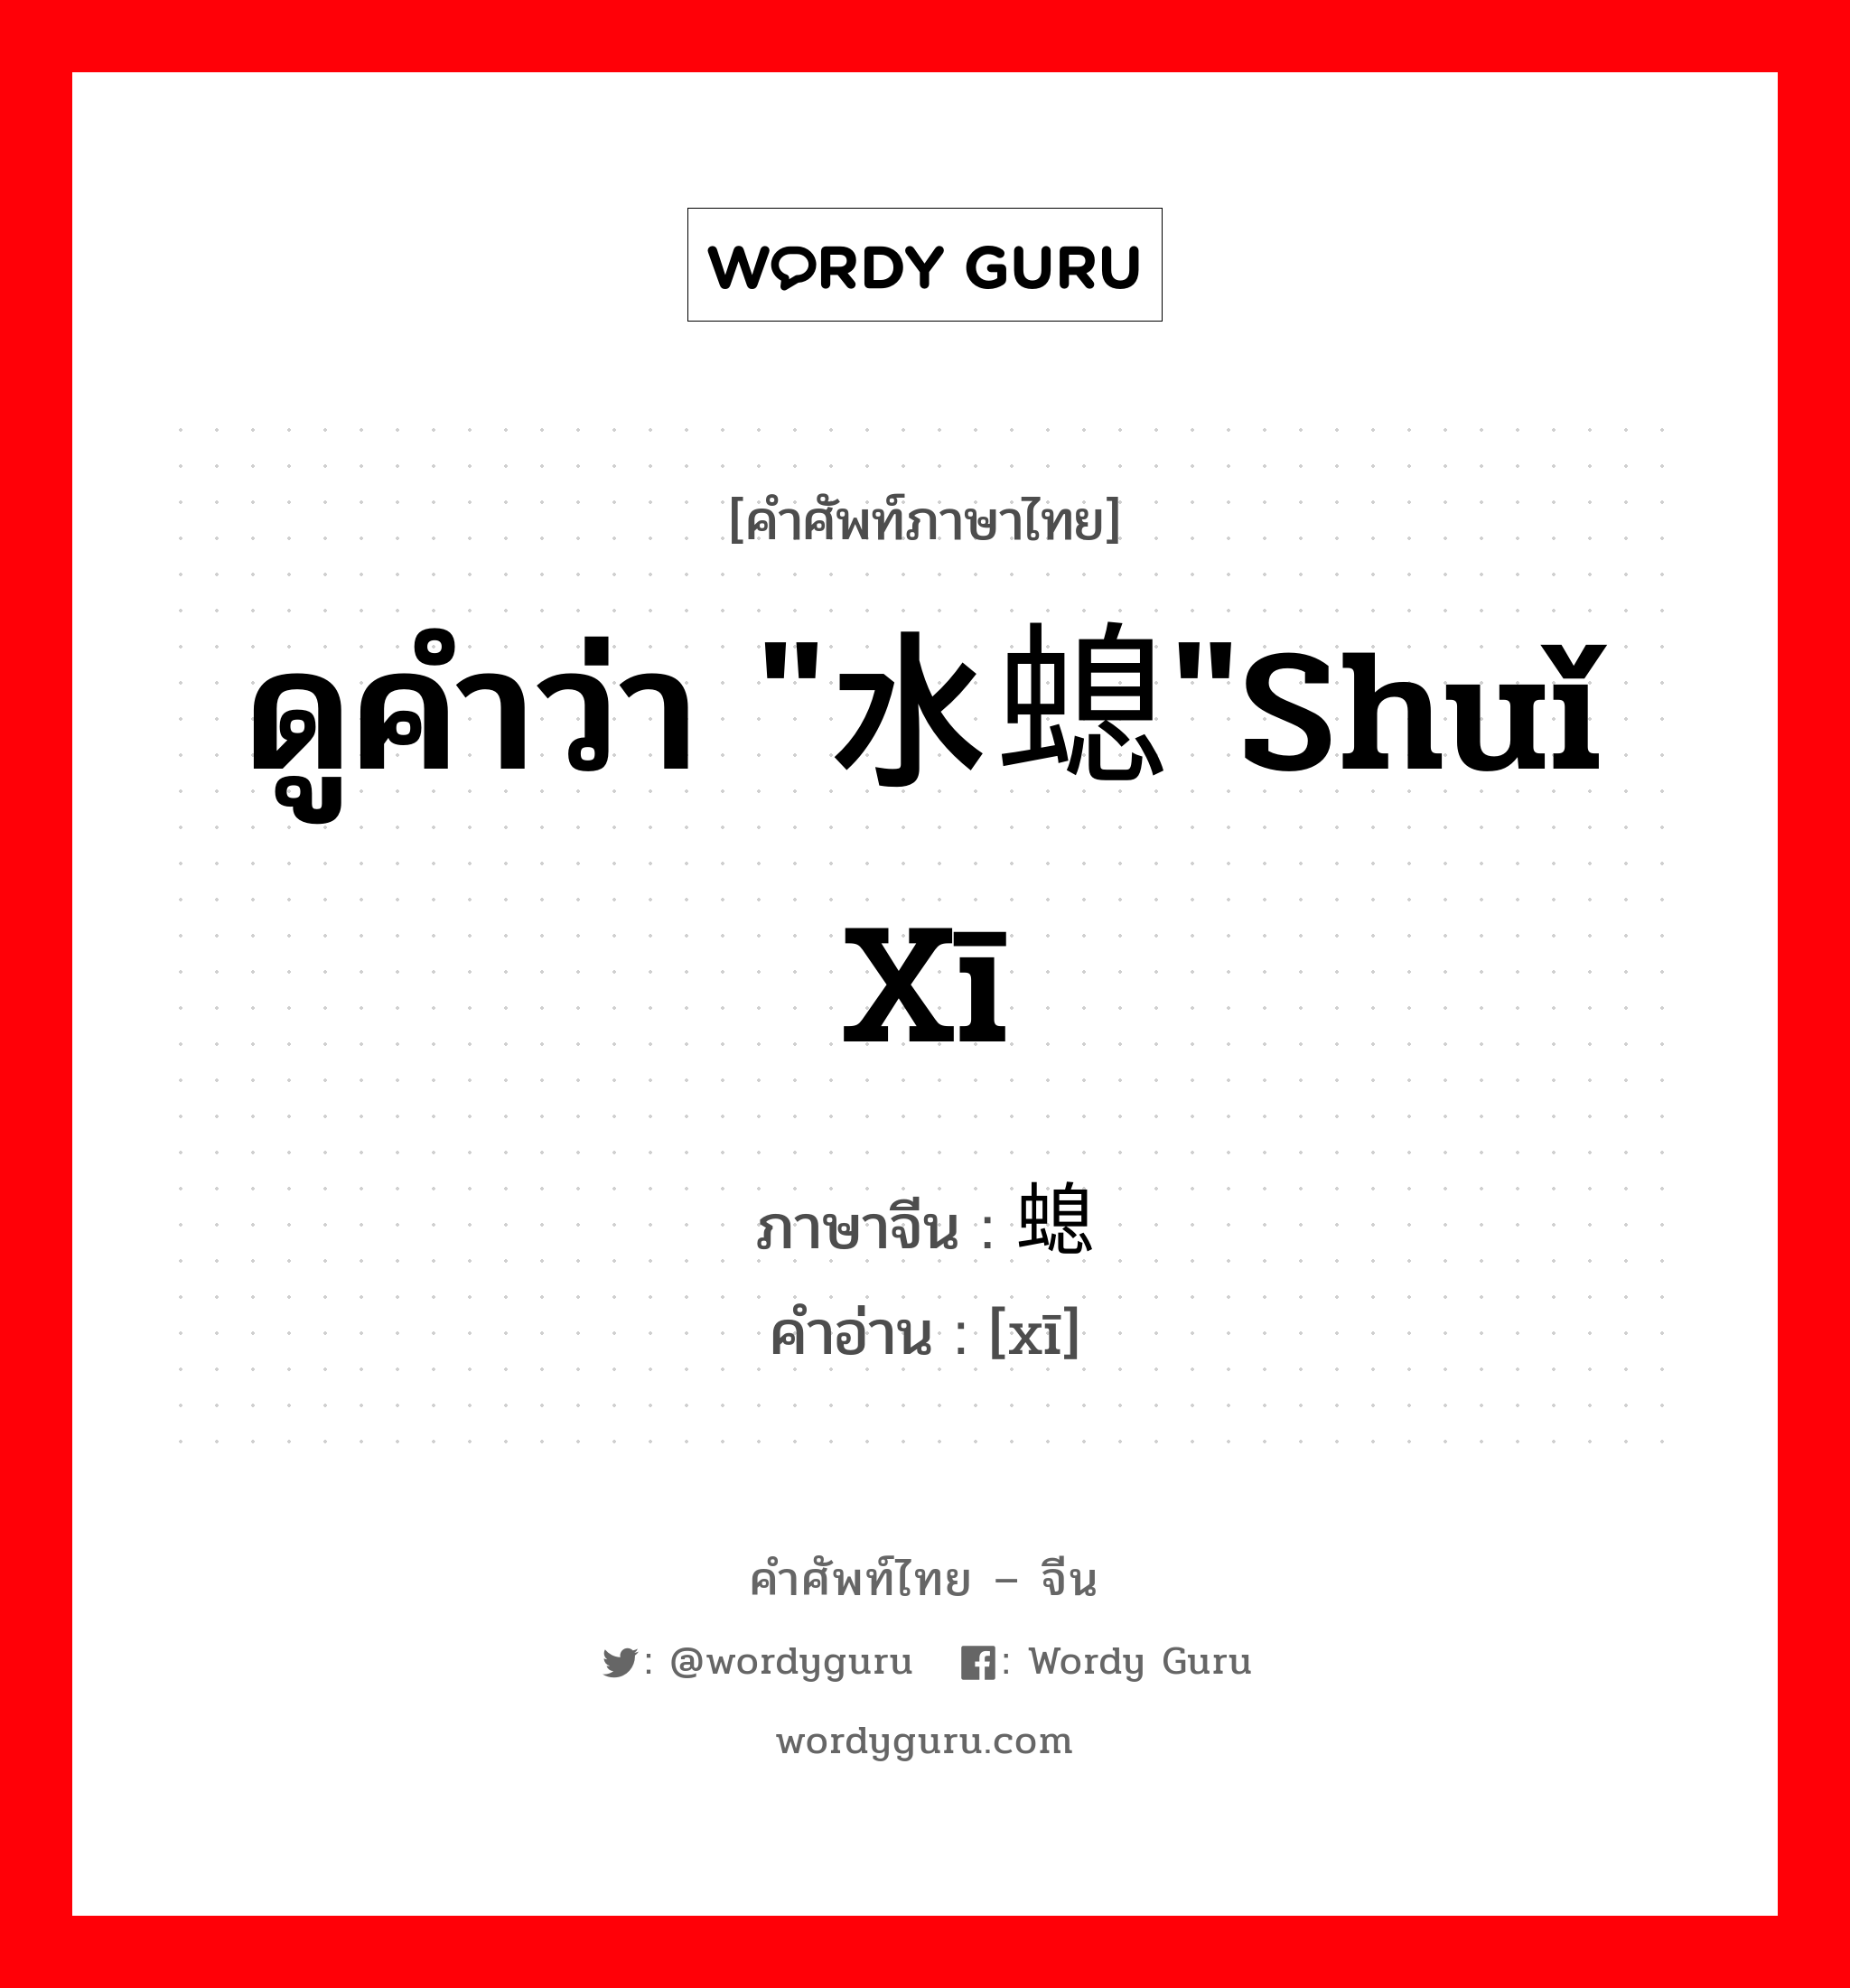 ดูคำว่า "水螅"shuǐ xī ภาษาจีนคืออะไร, คำศัพท์ภาษาไทย - จีน ดูคำว่า "水螅"shuǐ xī ภาษาจีน 螅 คำอ่าน [xī]